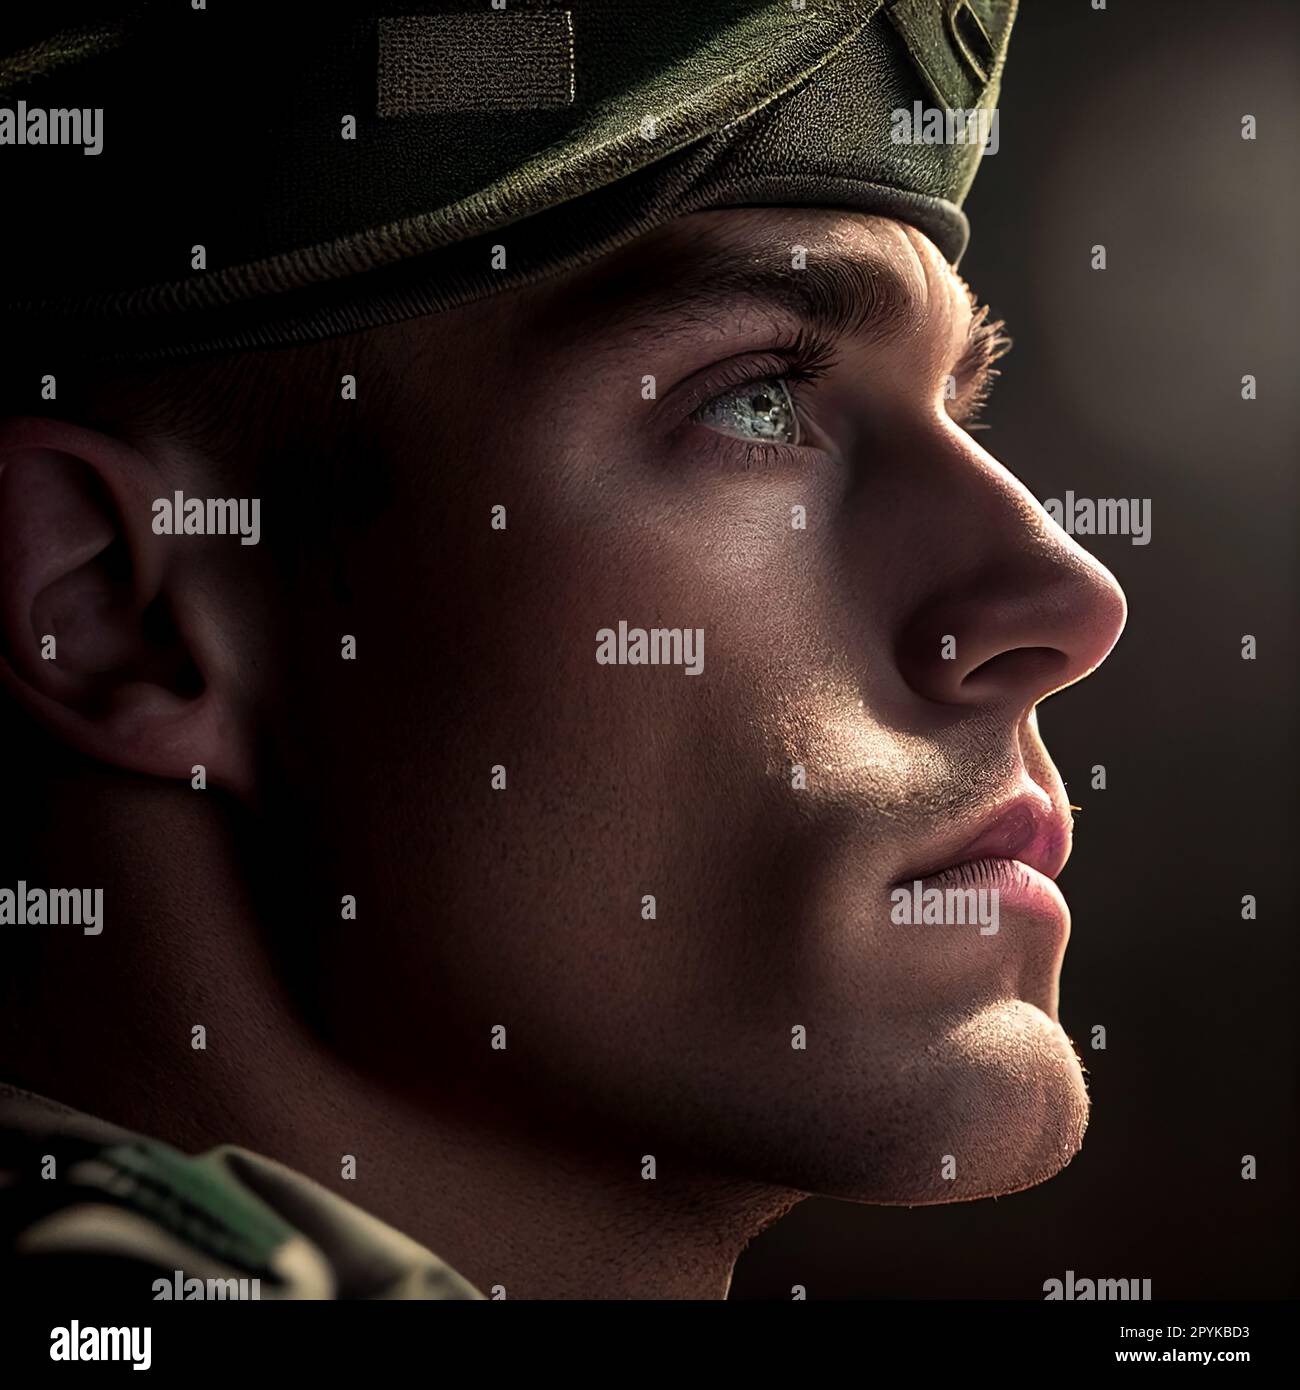 Soldat regardant dans la lumière, forces spéciales des États-Unis dans Camouflage uniformes studio shot. Écharpe Shemagh, visage peint. Fond noir, fond clair de fond avec contour teinté Banque D'Images